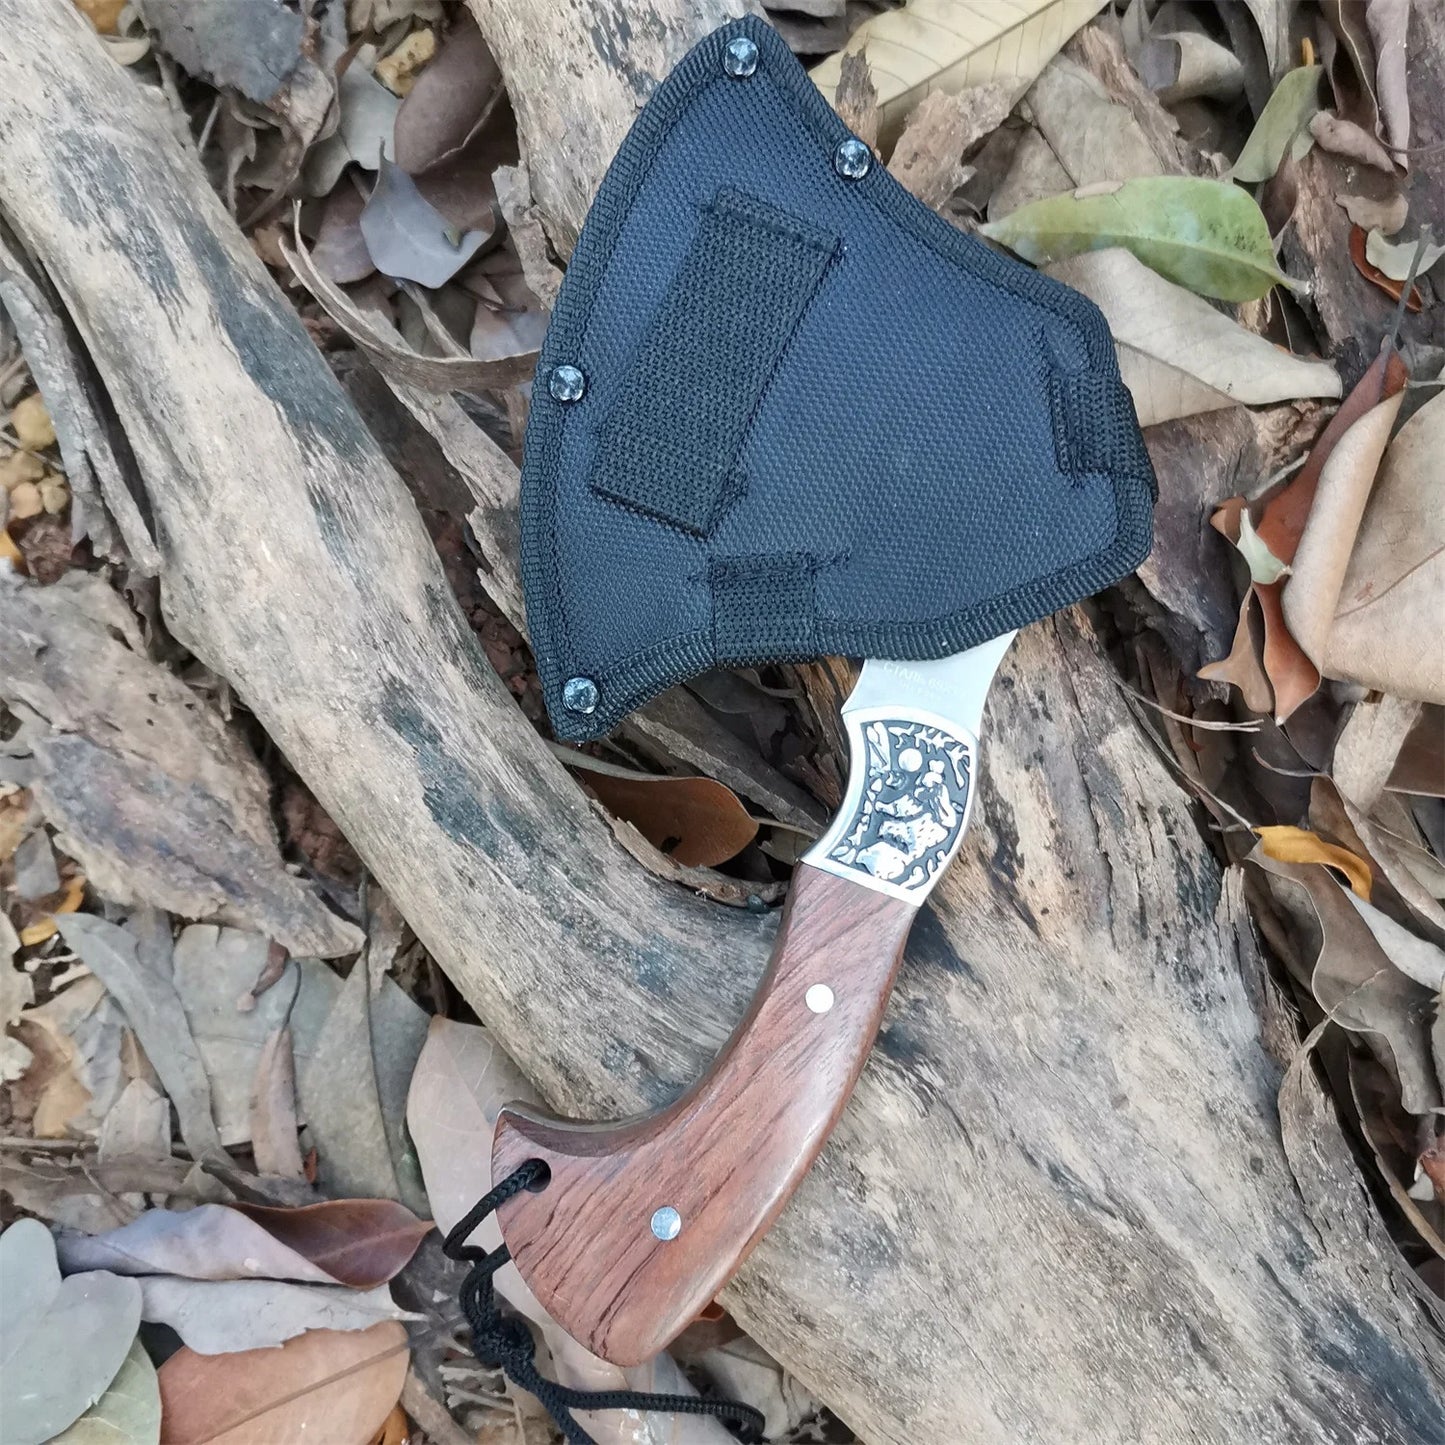 KD Outdoor Portable Axe Survival Camping Multifunctional Tool Axe